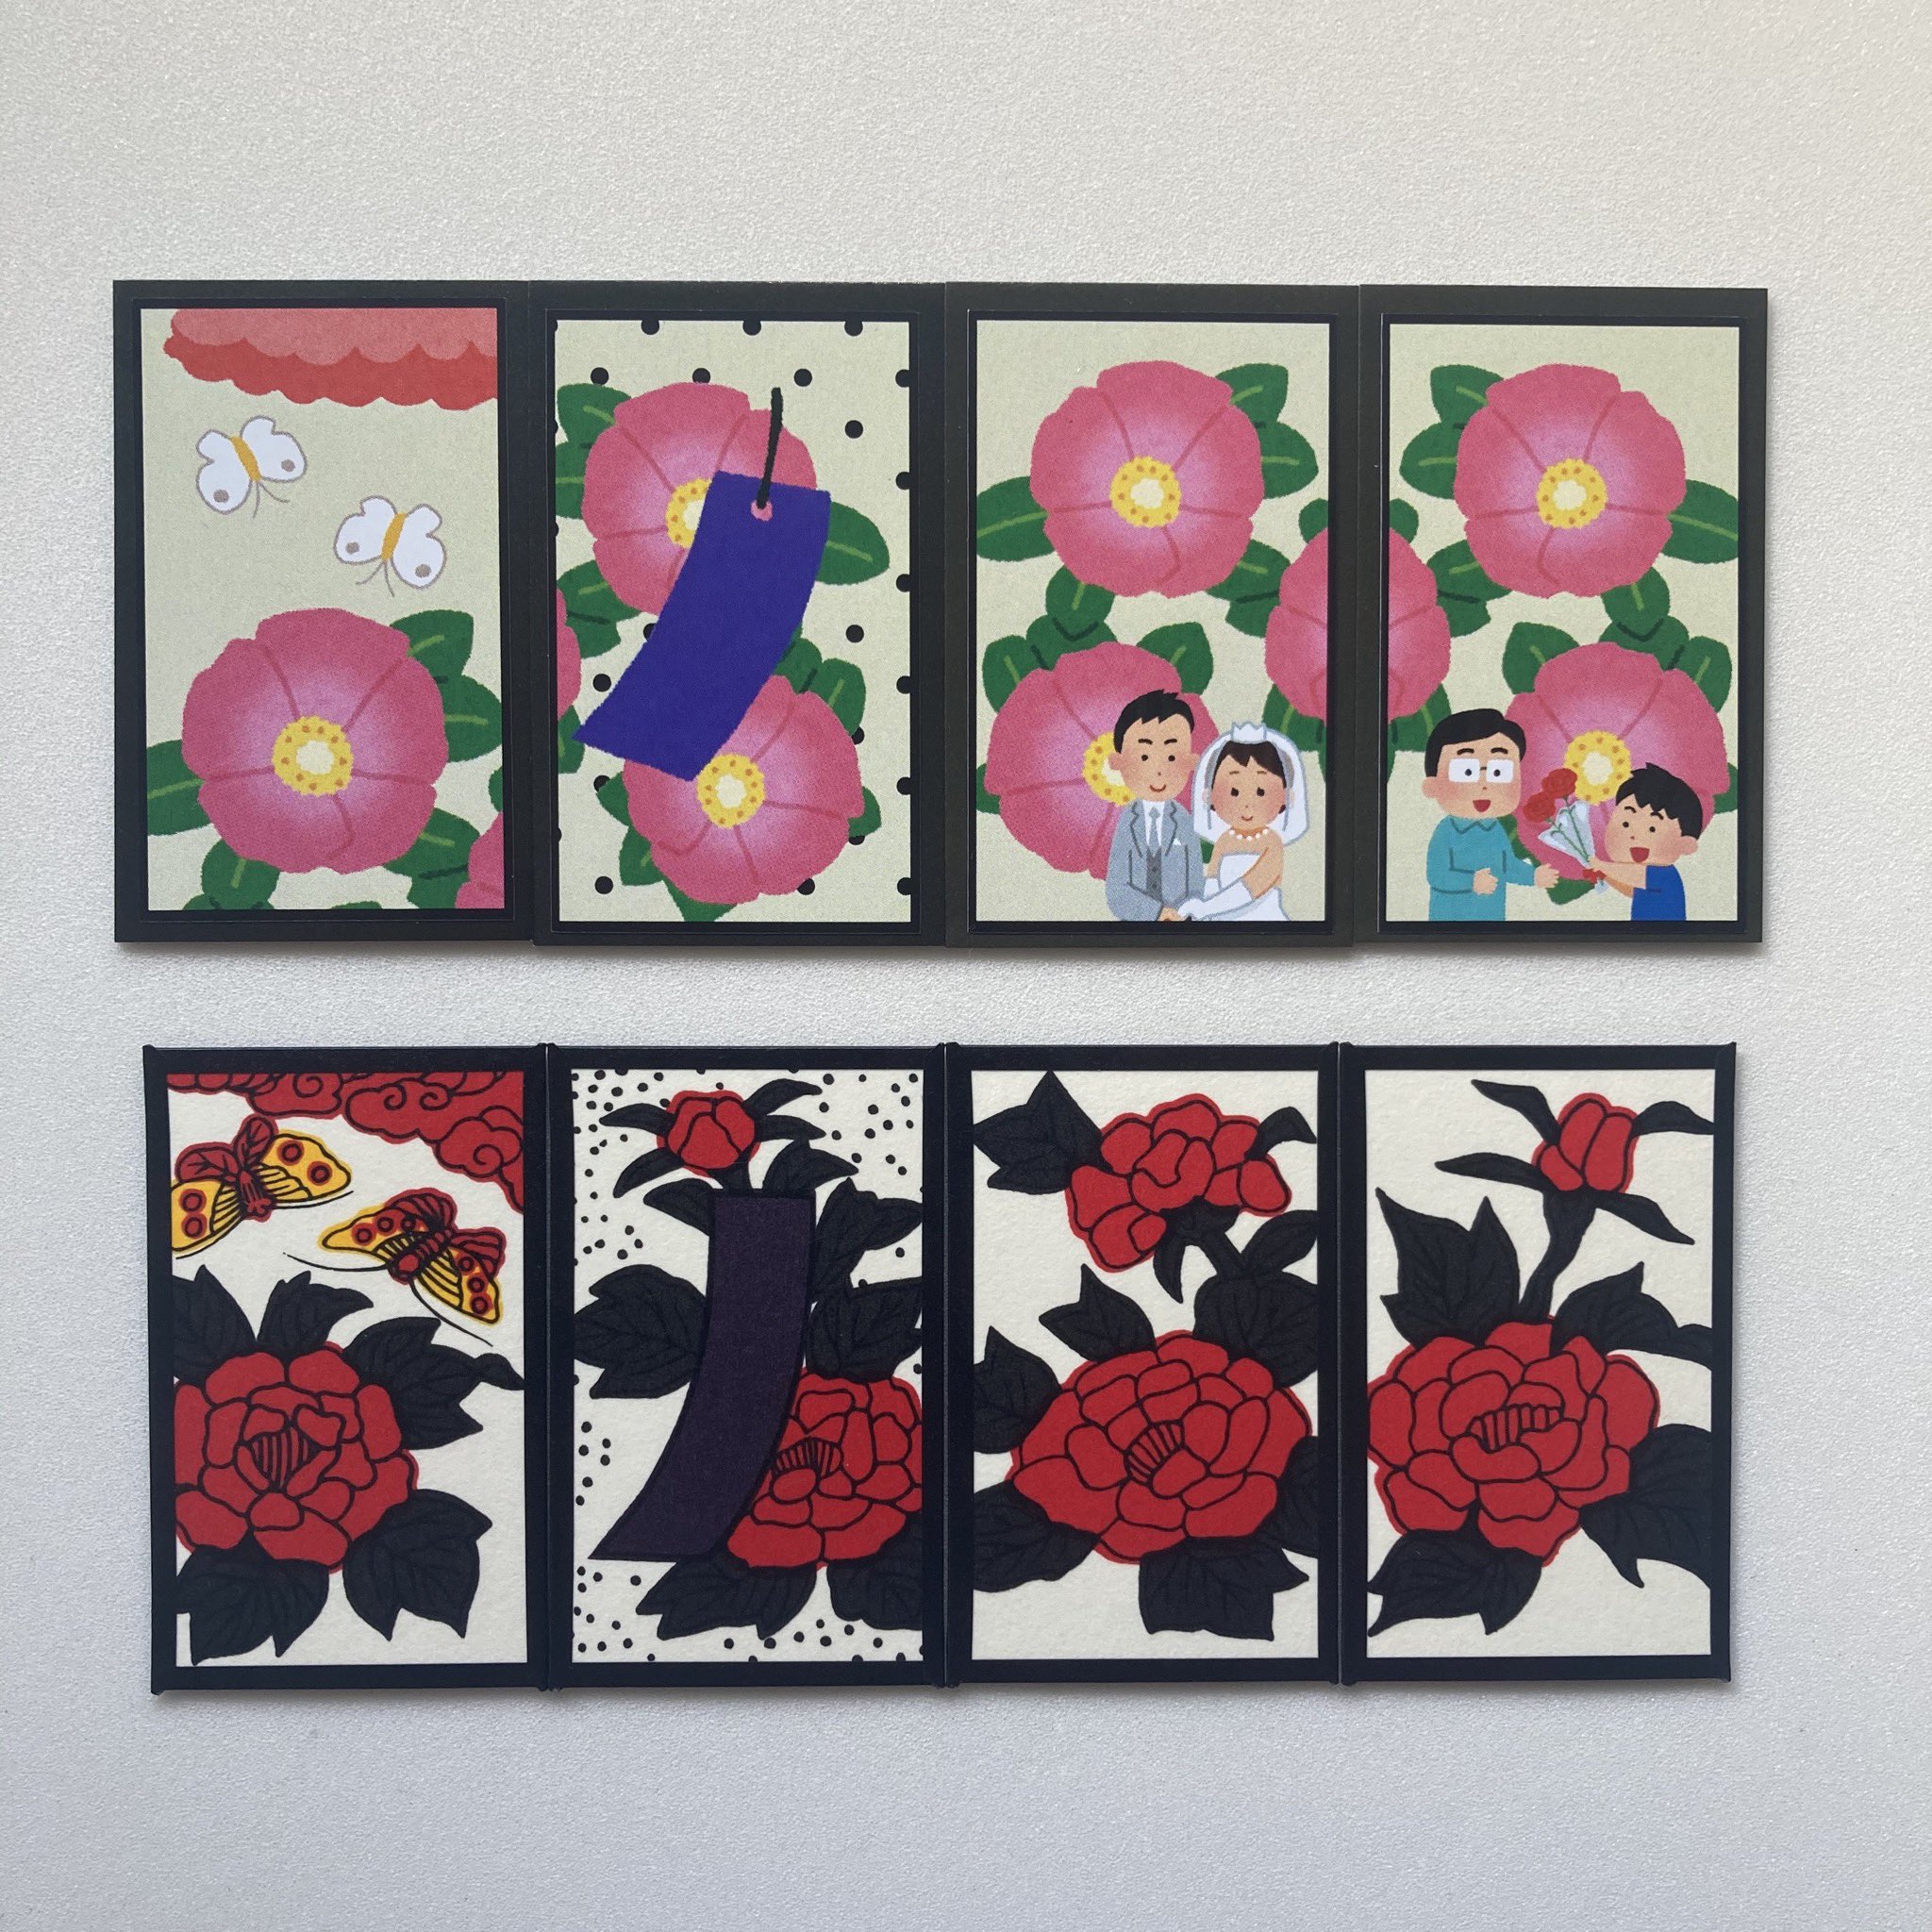 Twitter 上的 縫山ナントカ堂 花札マニア いらすとやさんのイラストだけで作った花札 実はパッケージが5種類あって これらもすべていらすとや さんのイラストを組み合わせて作ってます それぞれいろんなメーカーの花札のオマージュなのですが 分かる方はなかなかの